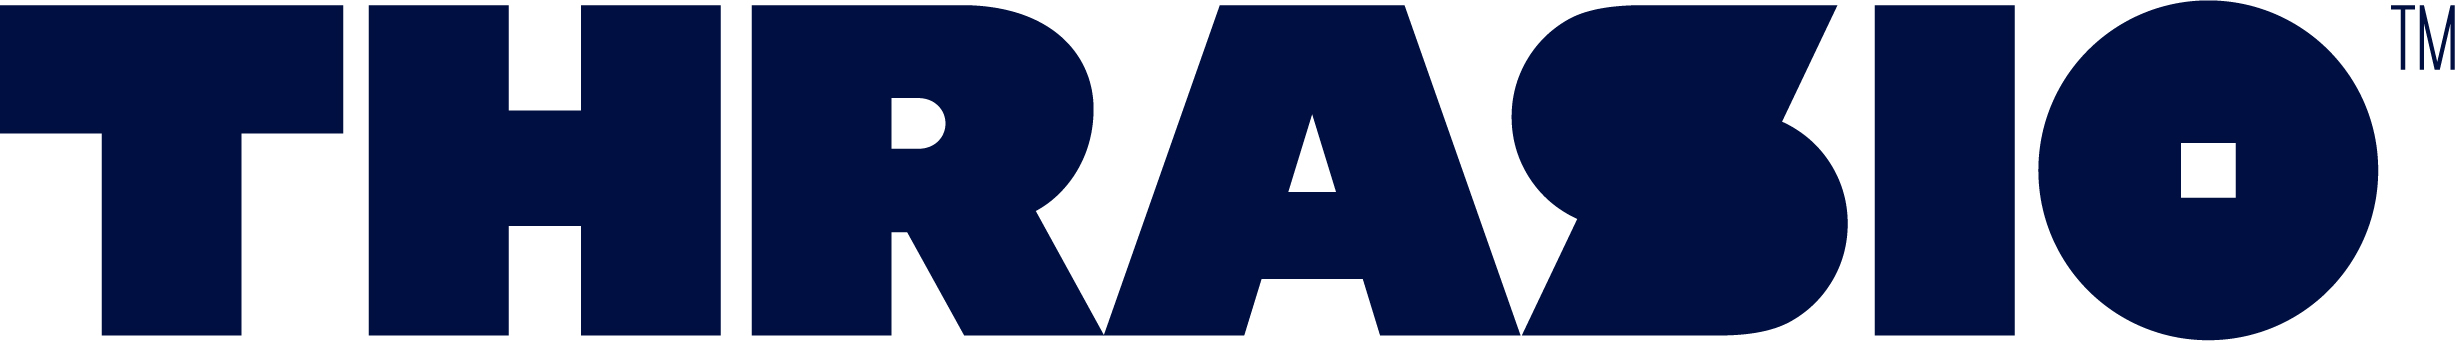 Thrasio logo